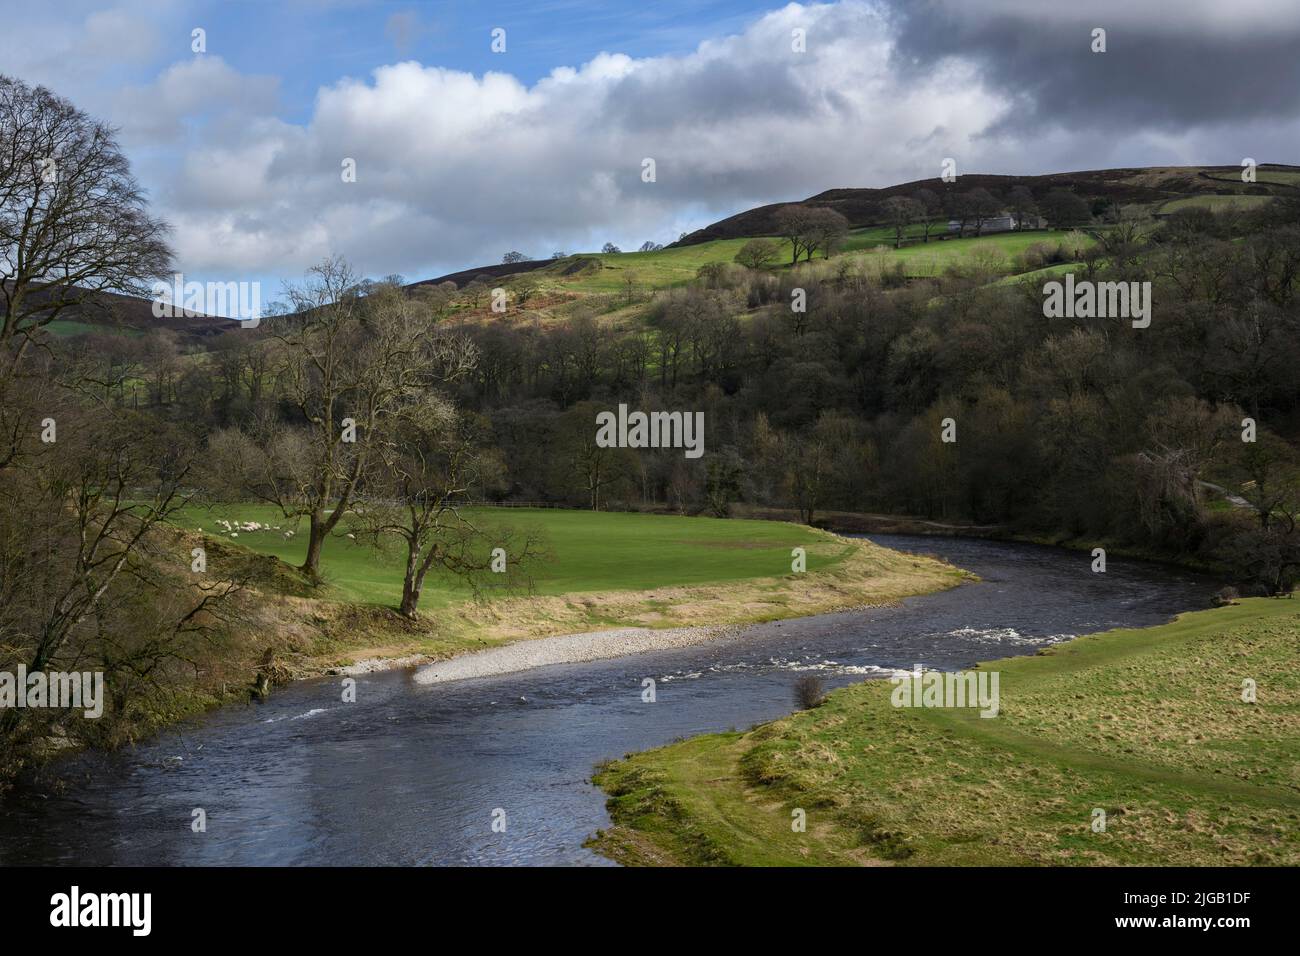 River Wharfe in malerischer ländlicher Landschaft (abfallende Talseite, sonnenbeschienenen Hügeln, Flussufer) - Bolton Abbey Estate, Wharfedale, Yorkshire Dales, GB, UK. Stockfoto